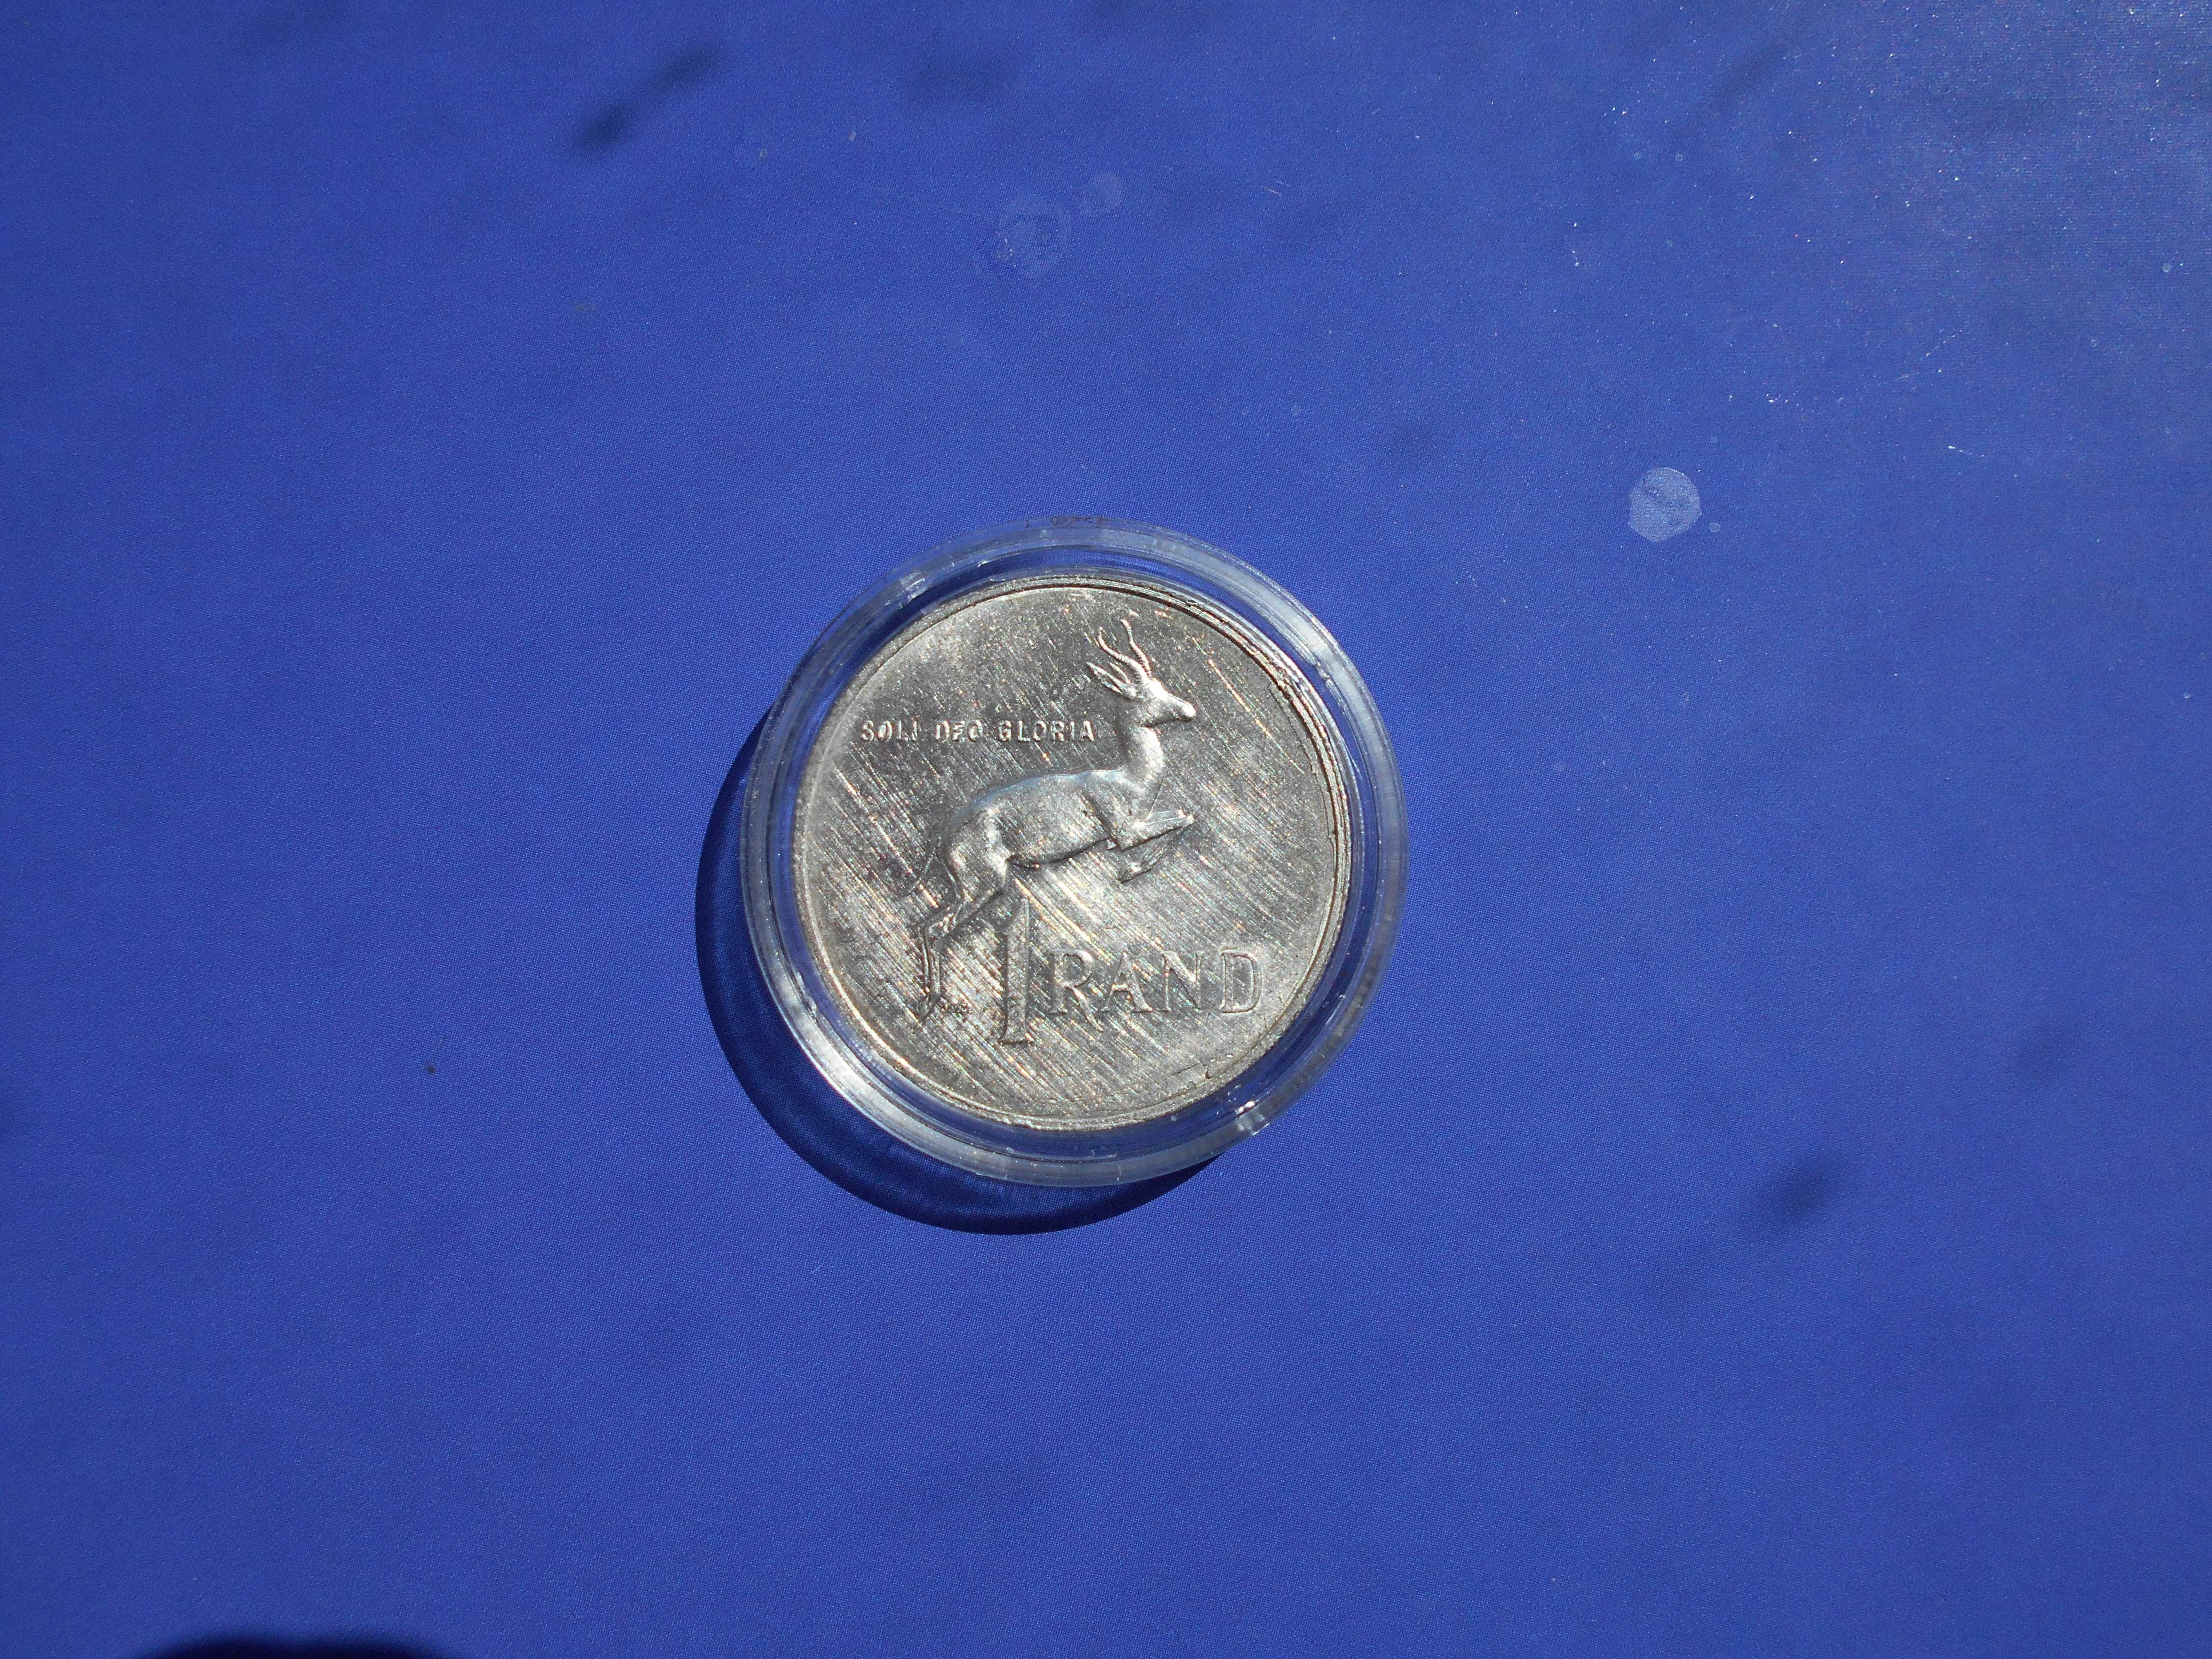 moneta 1 Rand 1967 srebro ag 800